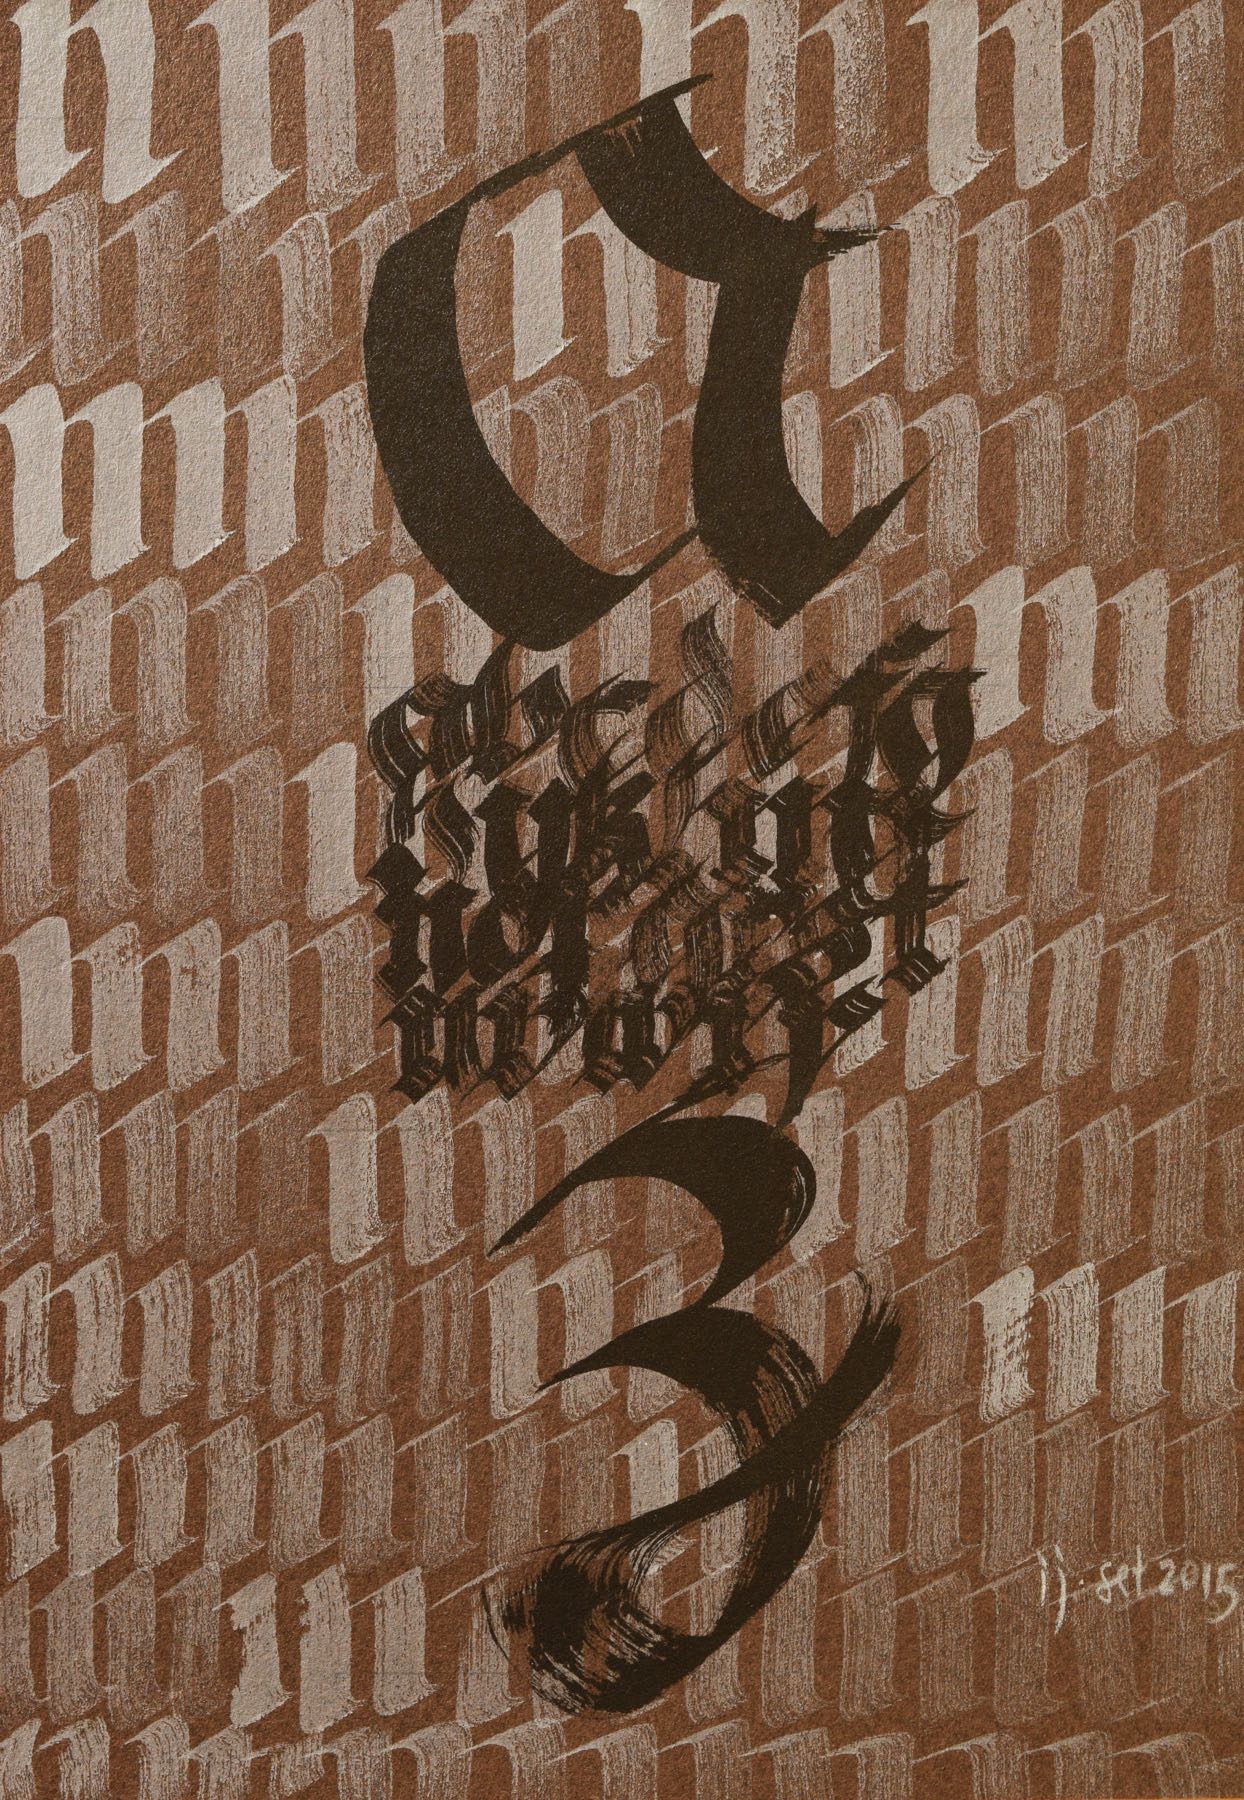 Caligrafia com letras em preto sobre fundo de letras “m“ em branco sobre papel marrom